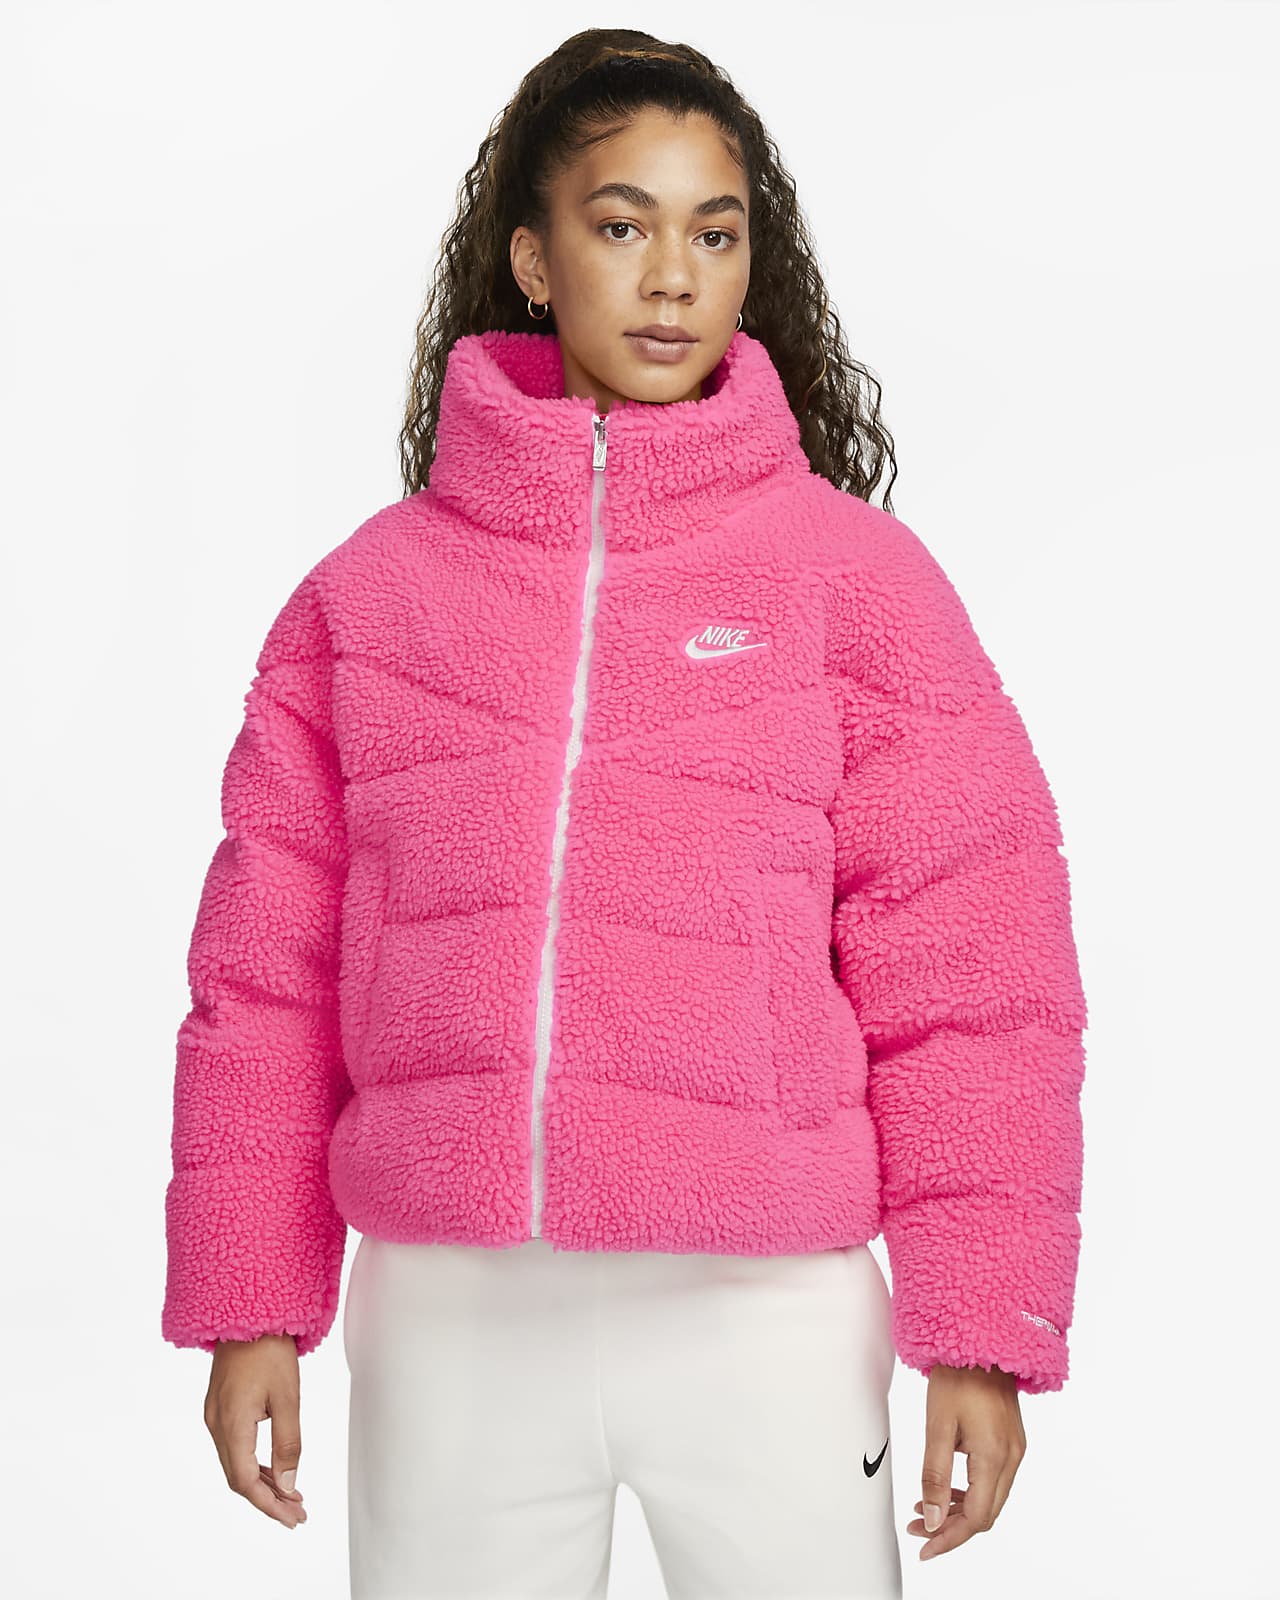 Kraan operator Parana rivier Nike Sportswear Therma-FIT City Series Women's Synthetic Fill High-Pile  Fleece Jacket. Nike LU